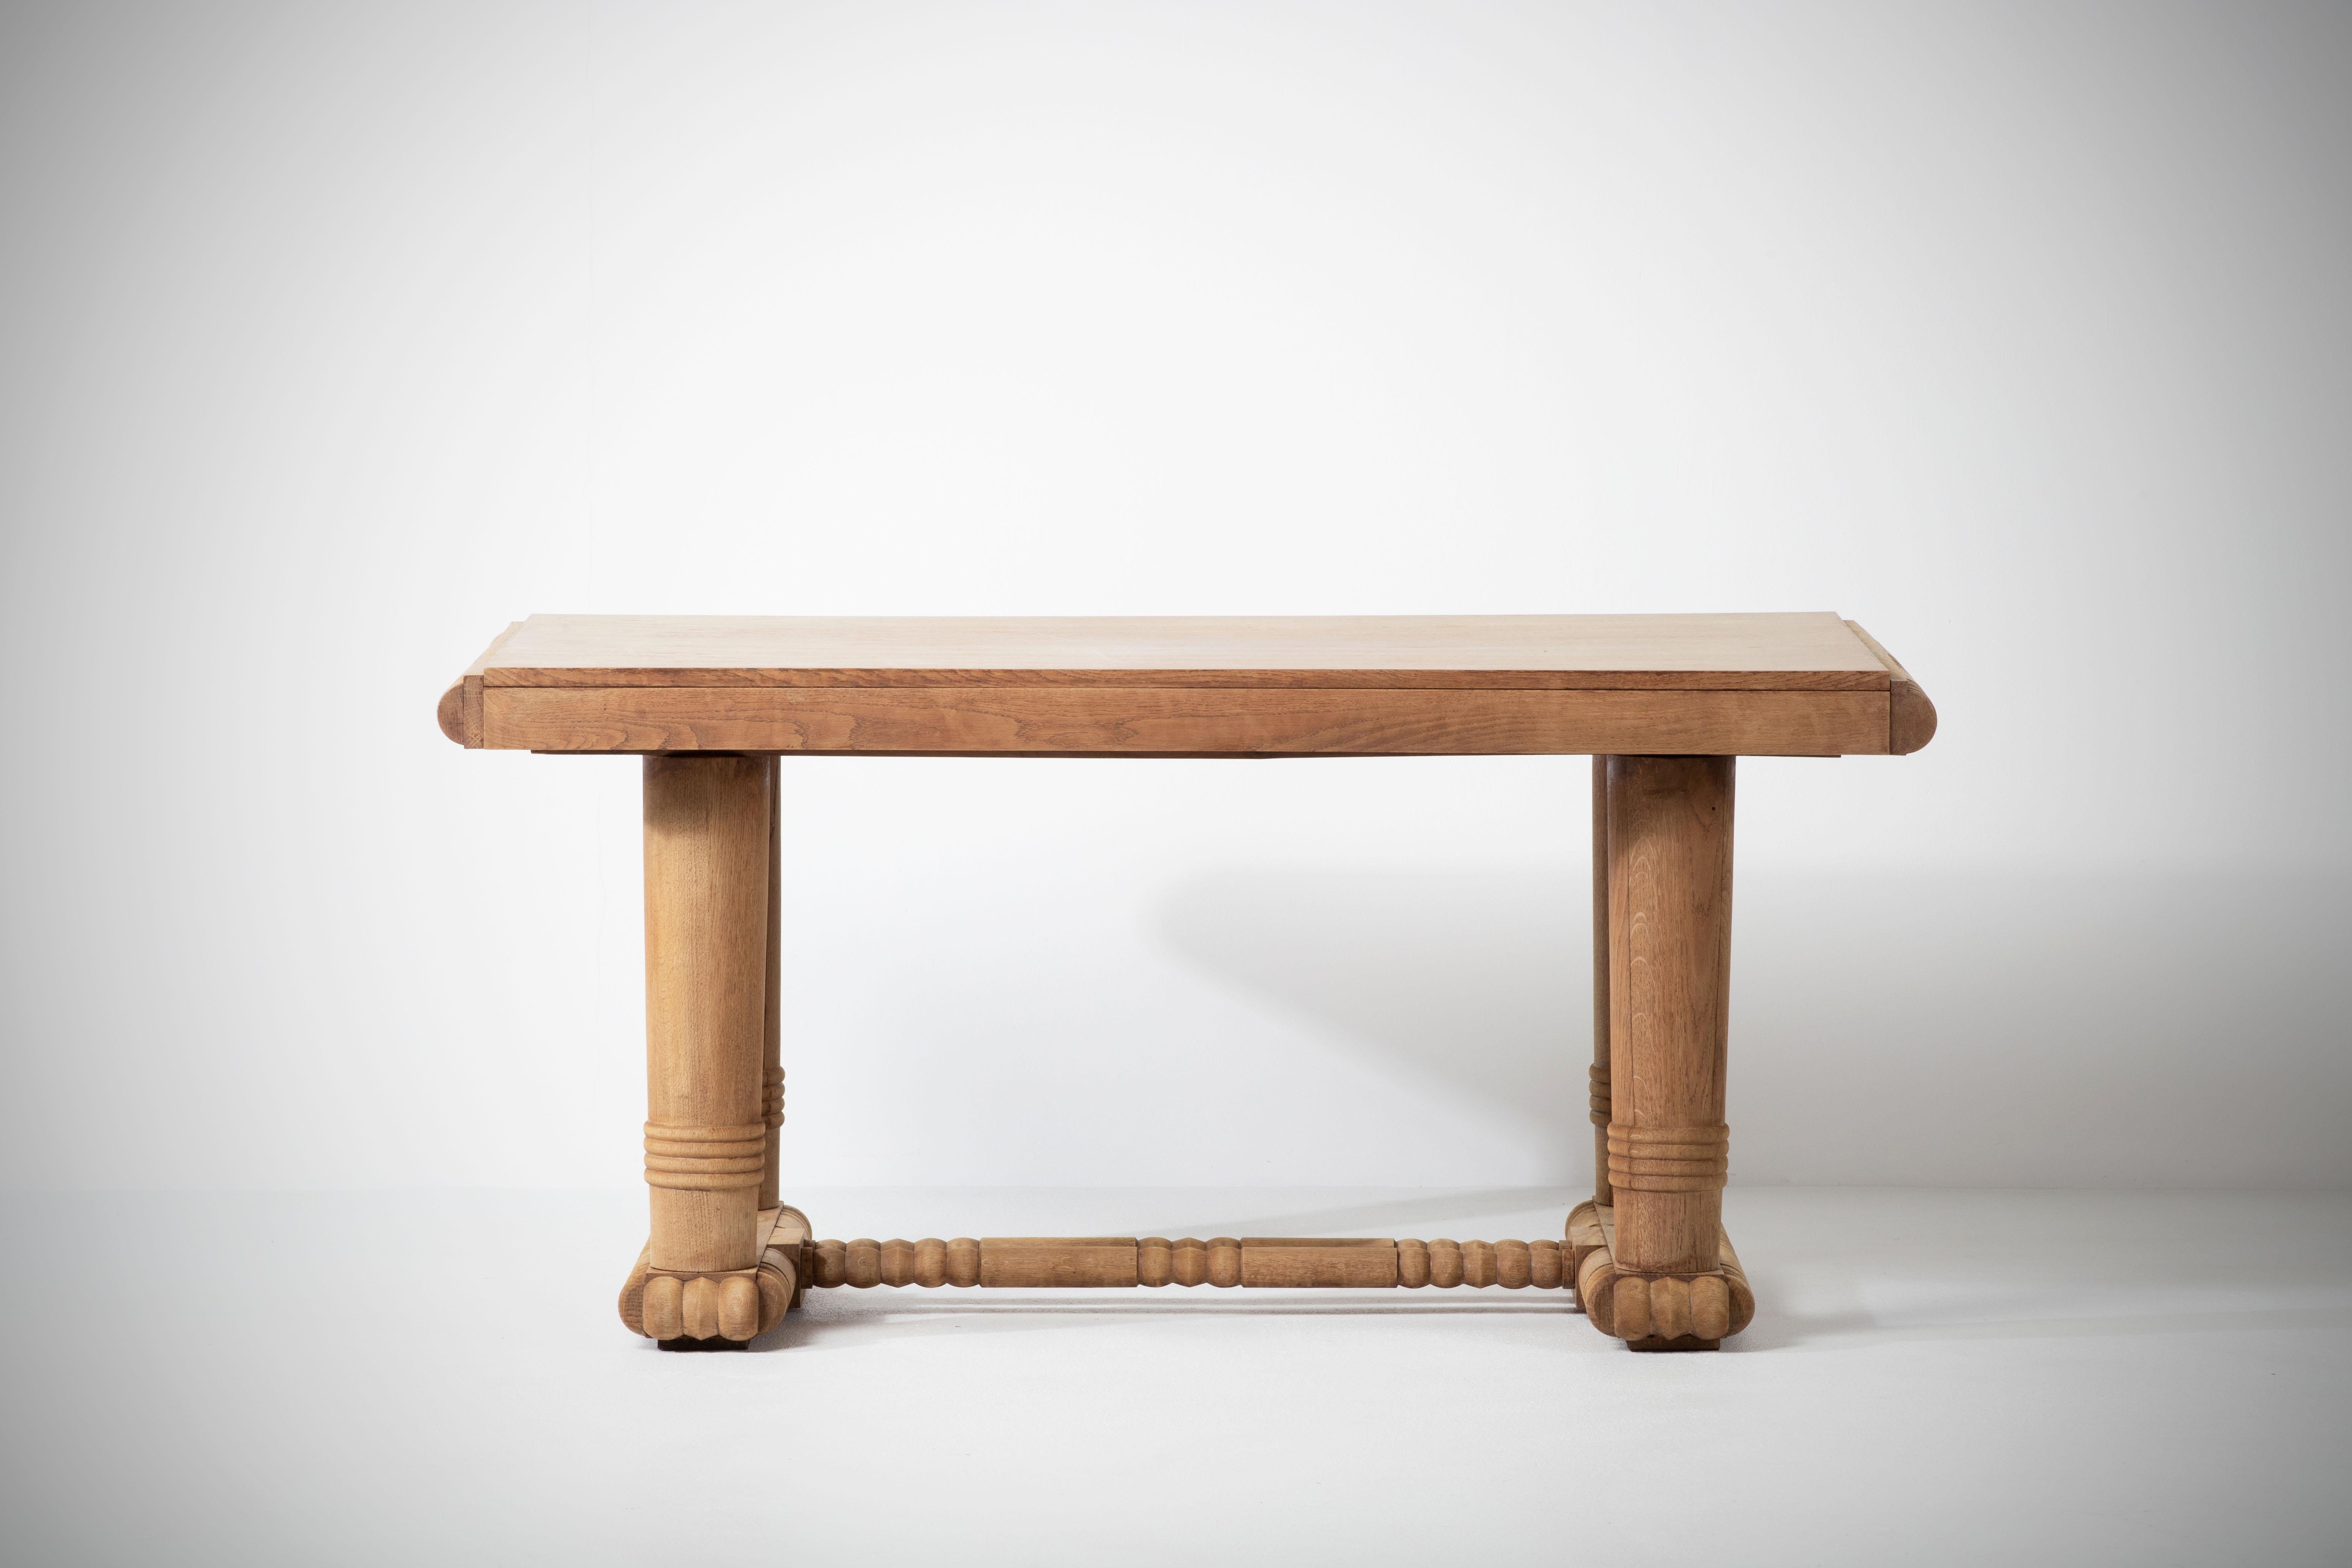 Table de salle à manger à rallonge conçue dans les années 1940 en France. 
Les pieds de cette table sont magnifiquement façonnés et présentent de belles formes organiques. Le plateau est rectangulaire avec deux espaces pour des feuilles extensibles,